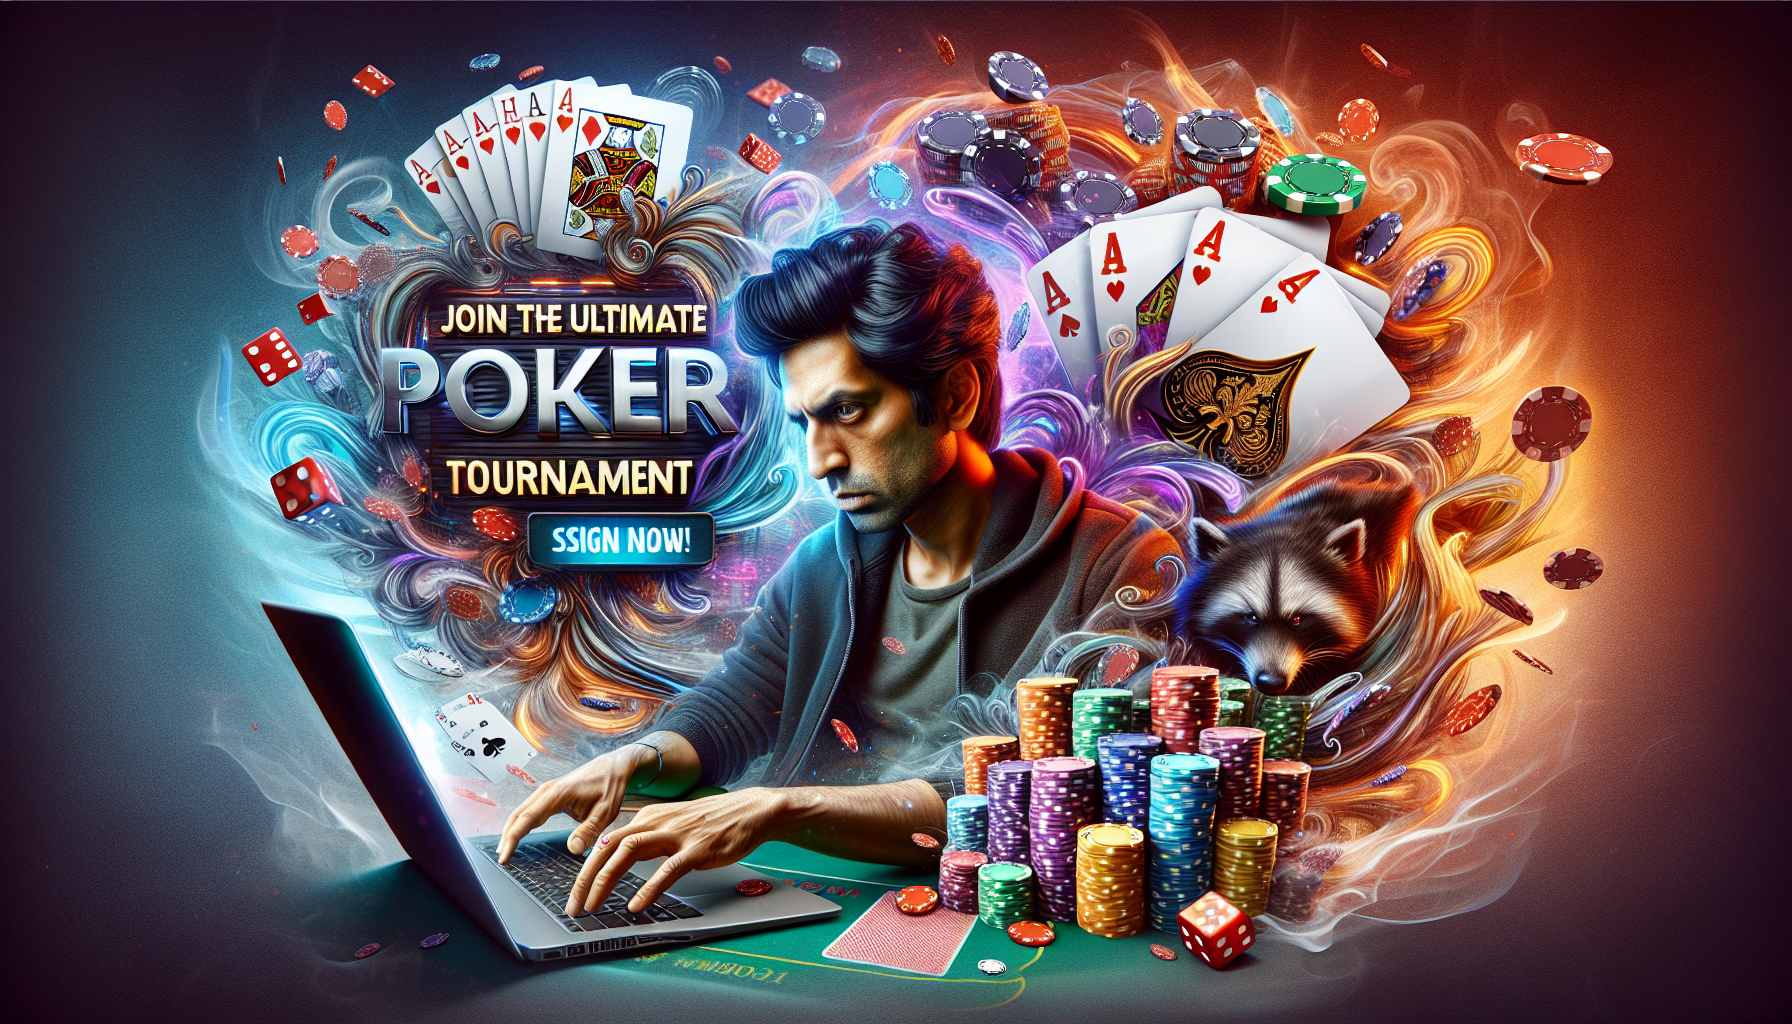 inscrivez-vous à un tournoi de poker pour tenter de remporter des gains exceptionnels.